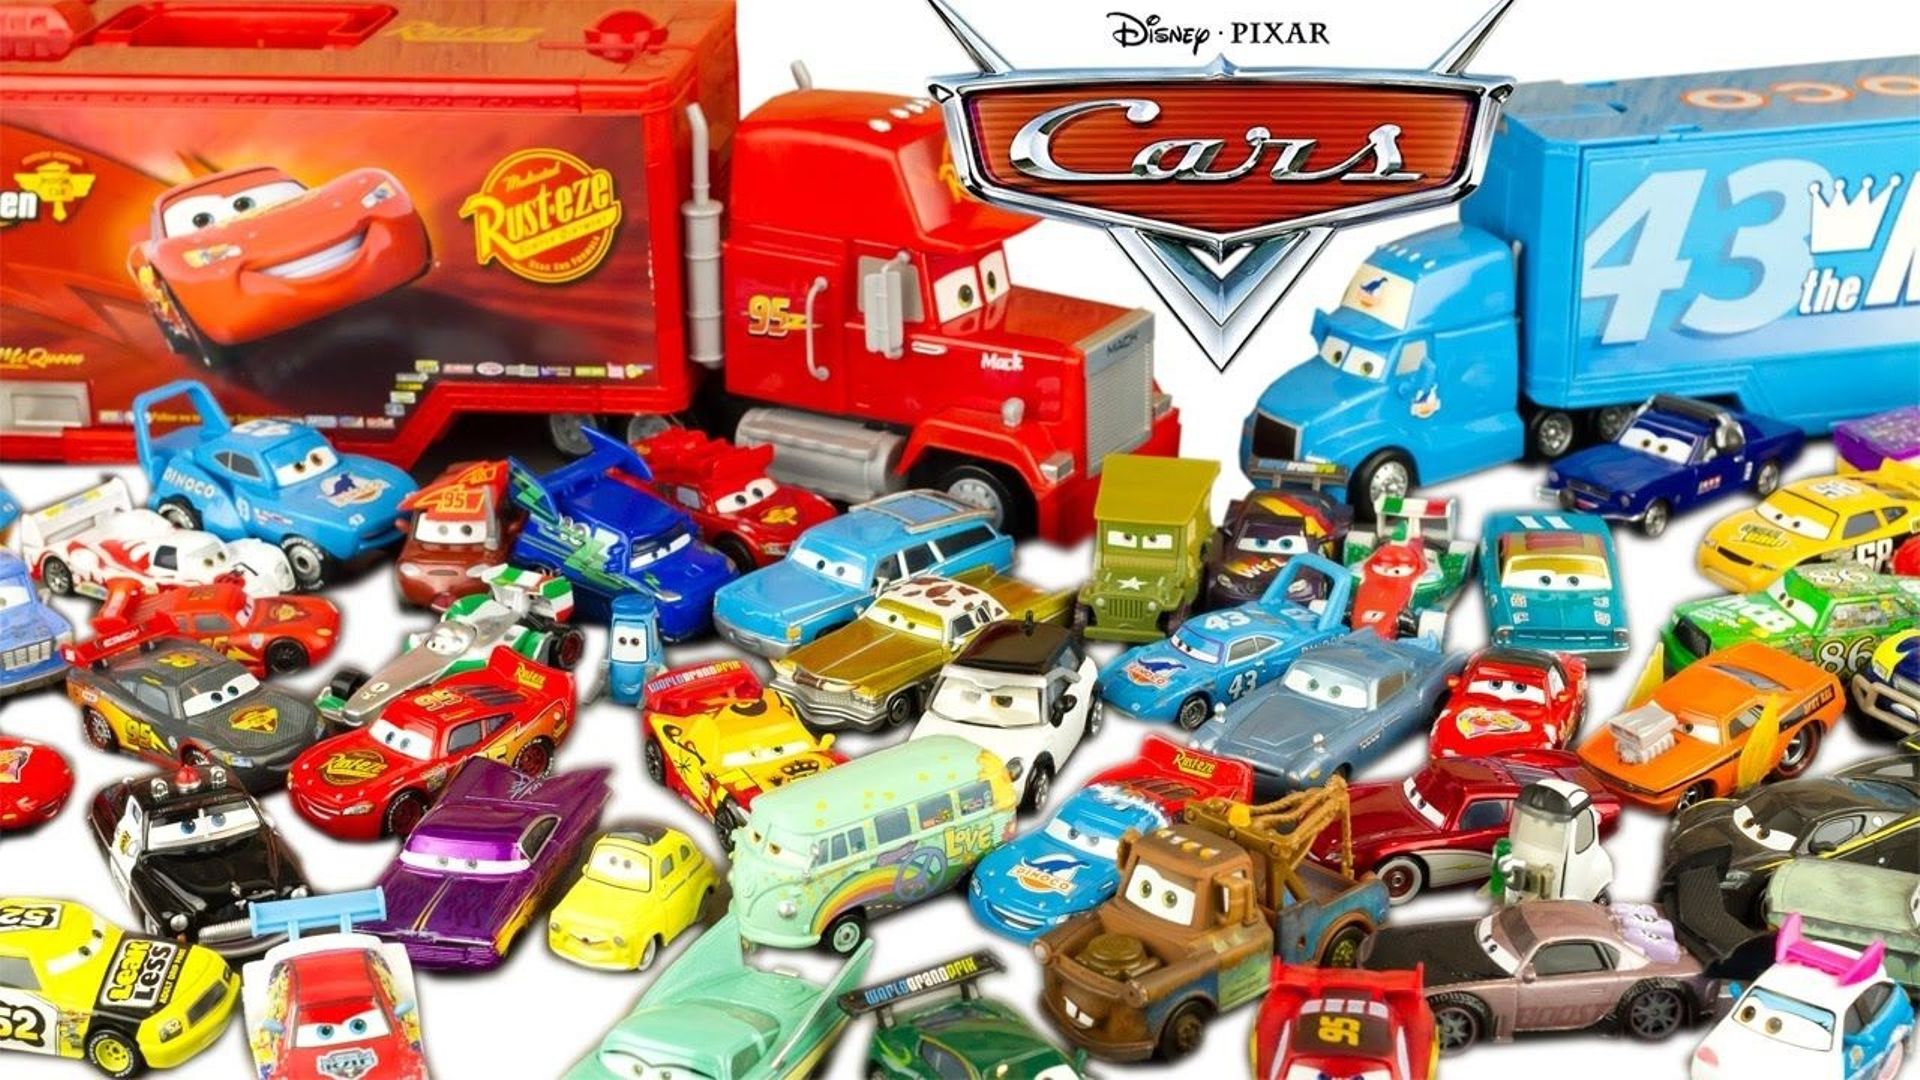 Les jouets Cars, des petites voitures bien entendu